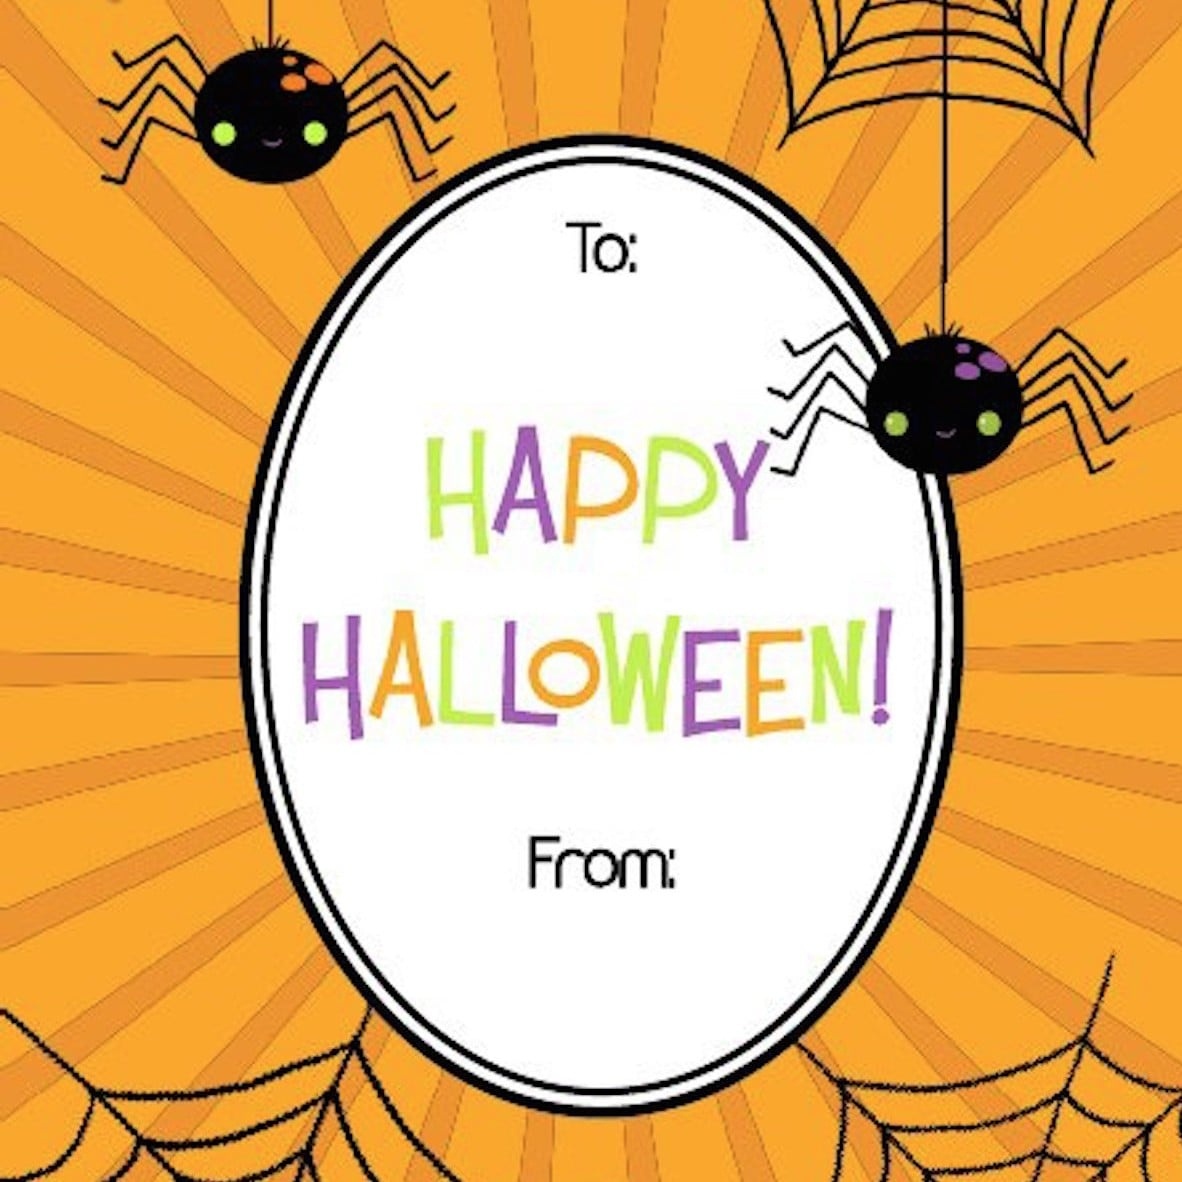 Free Printable Halloween Gift Tags | Popsugar Smart Living - Free Printable Halloween Tags